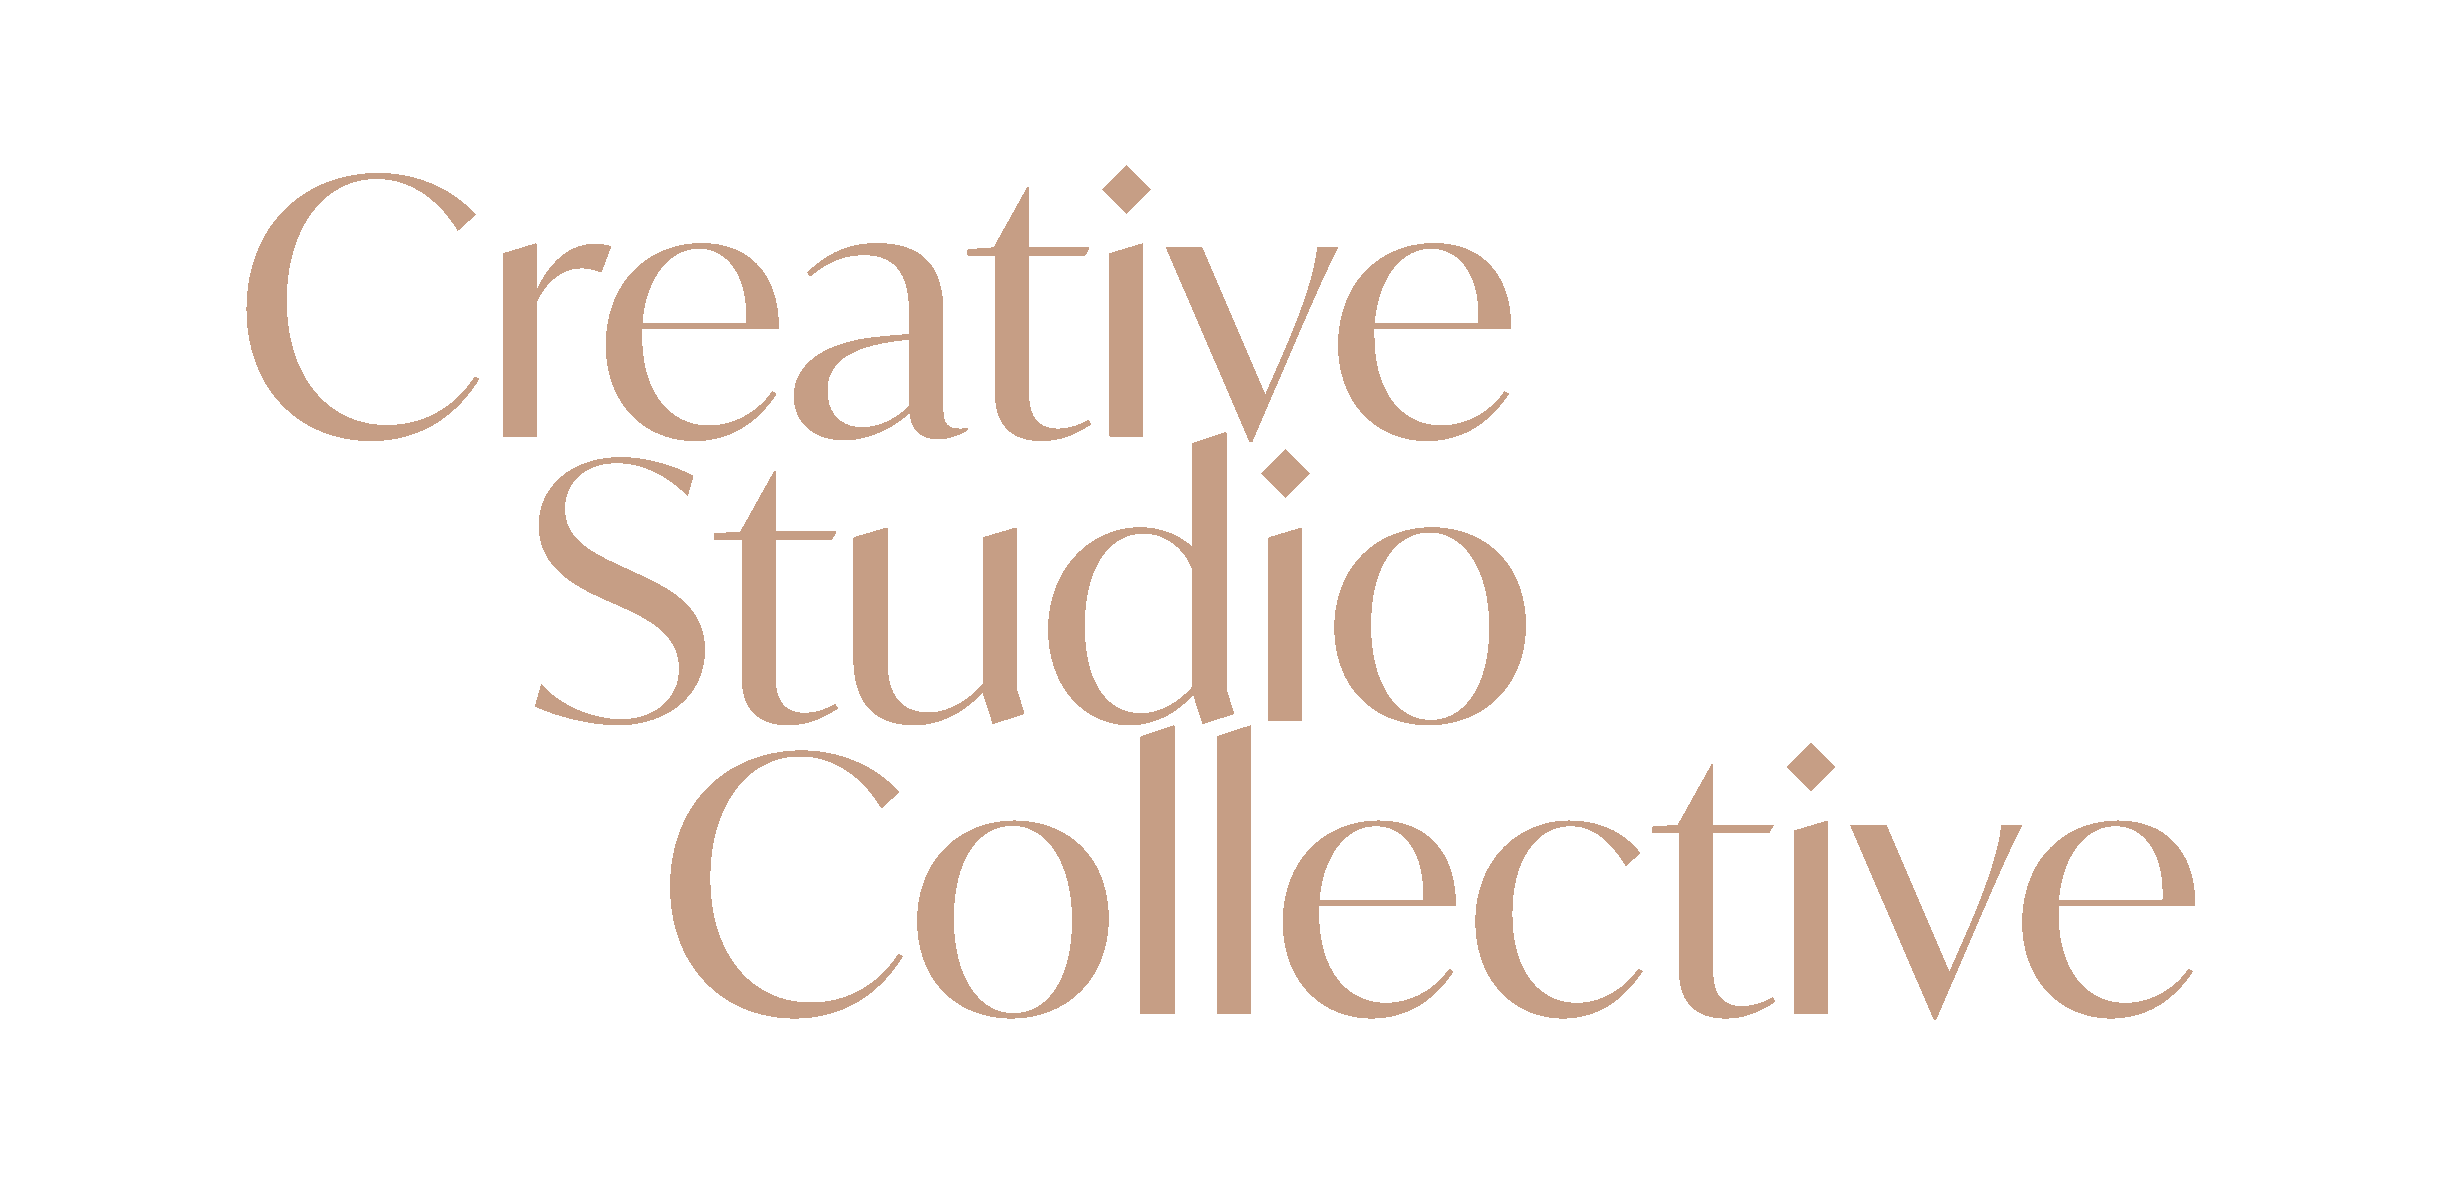 Creative Studio Collective